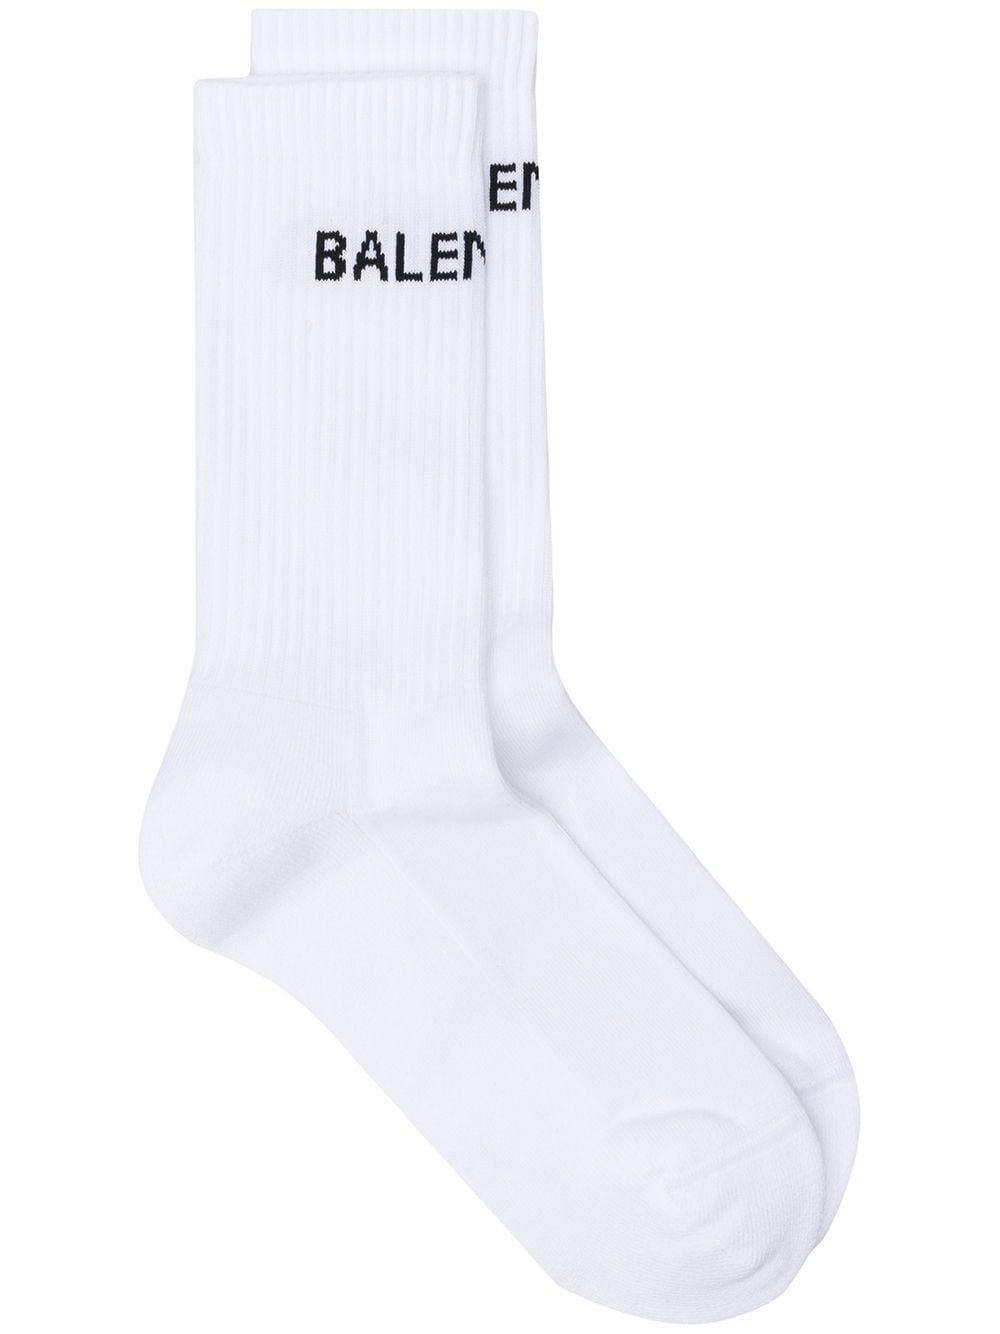 White logo socks